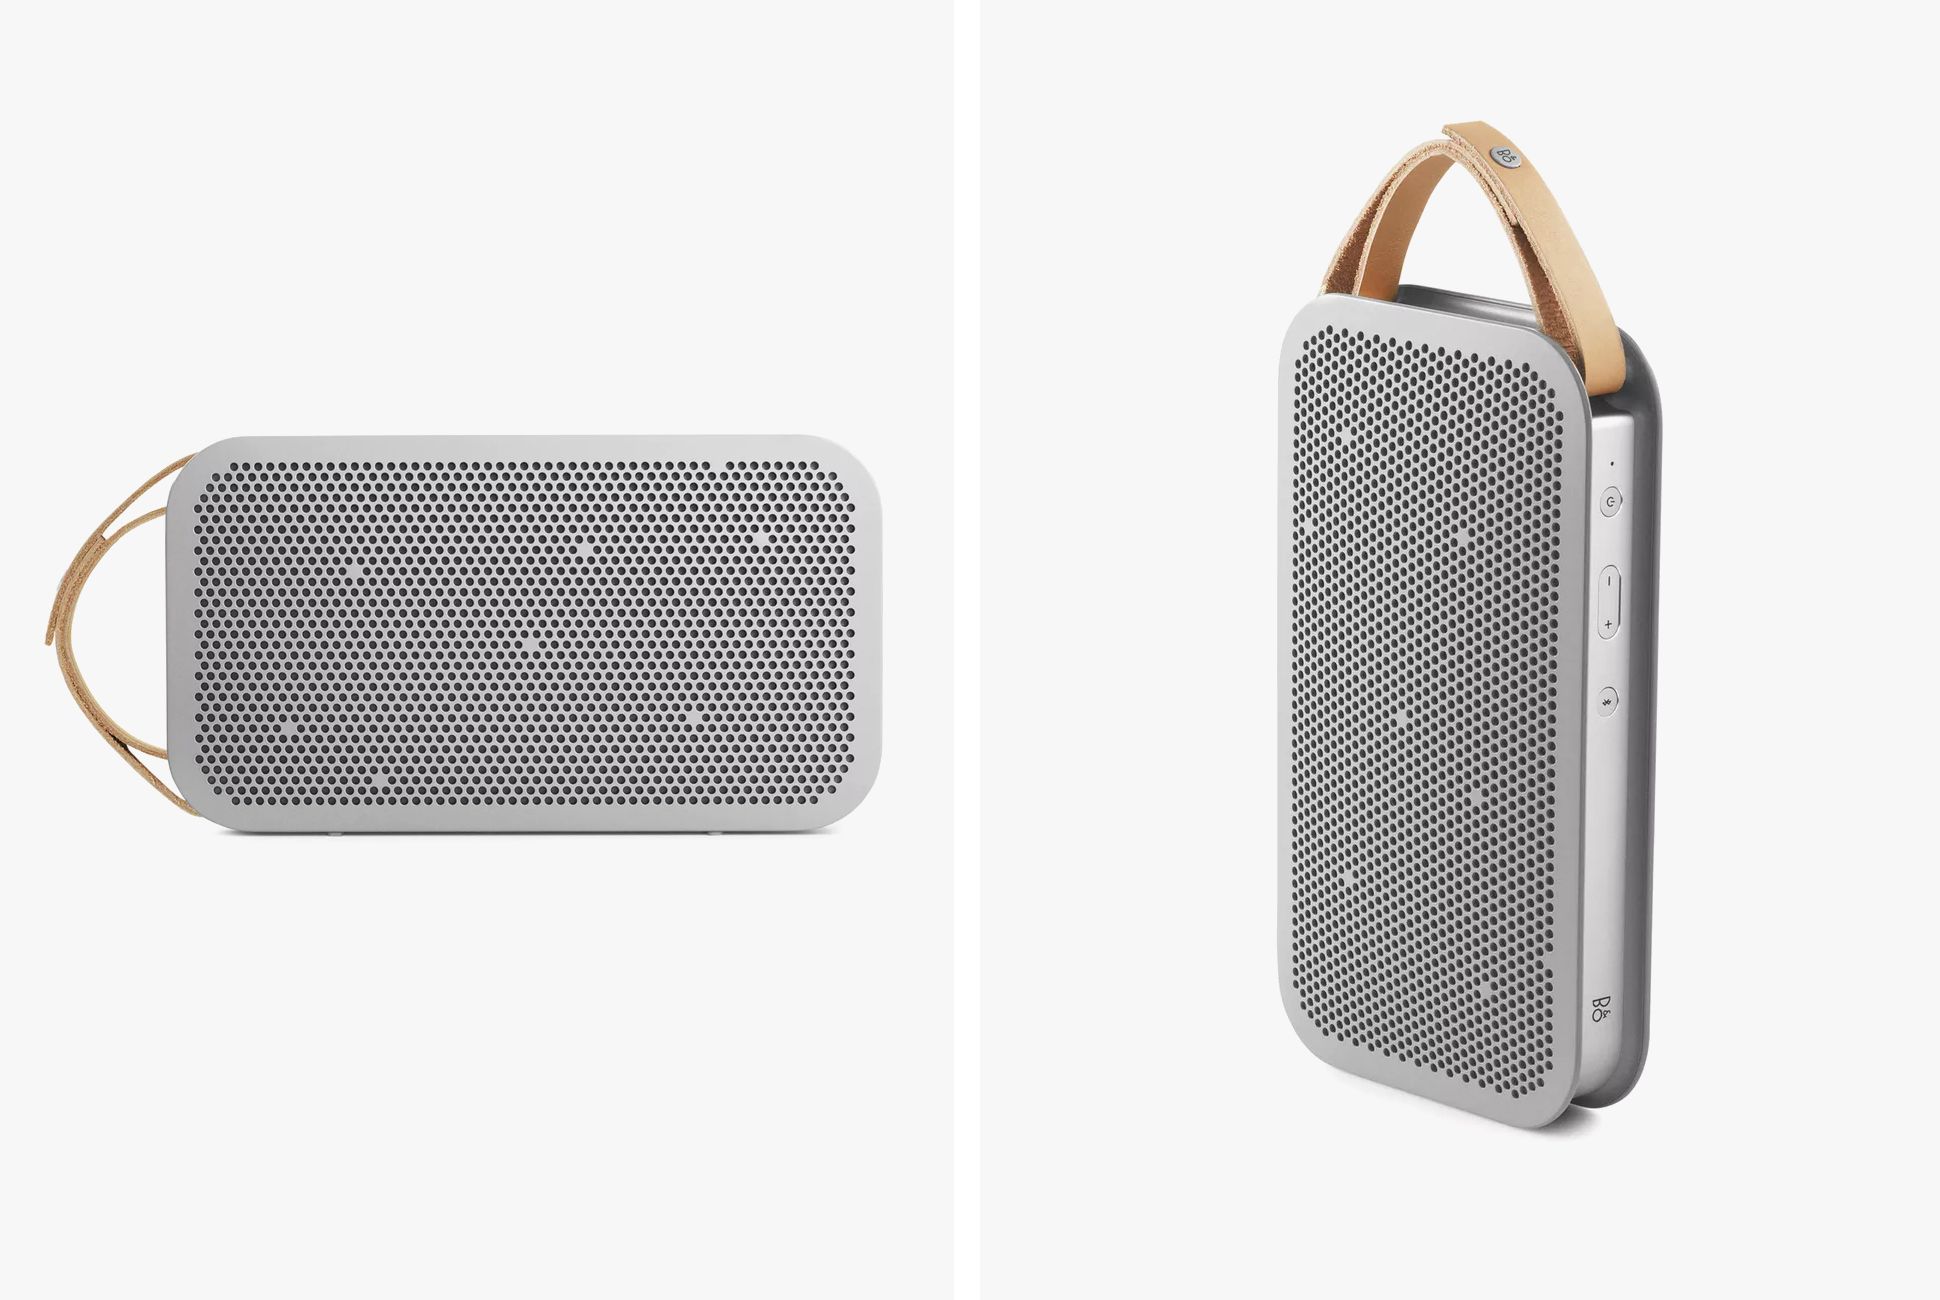 landinwaarts Amazon Jungle Belangrijk nieuws Bang & Olufsen's Portable Bluetooth Speaker Is 50% Off — You Save $200